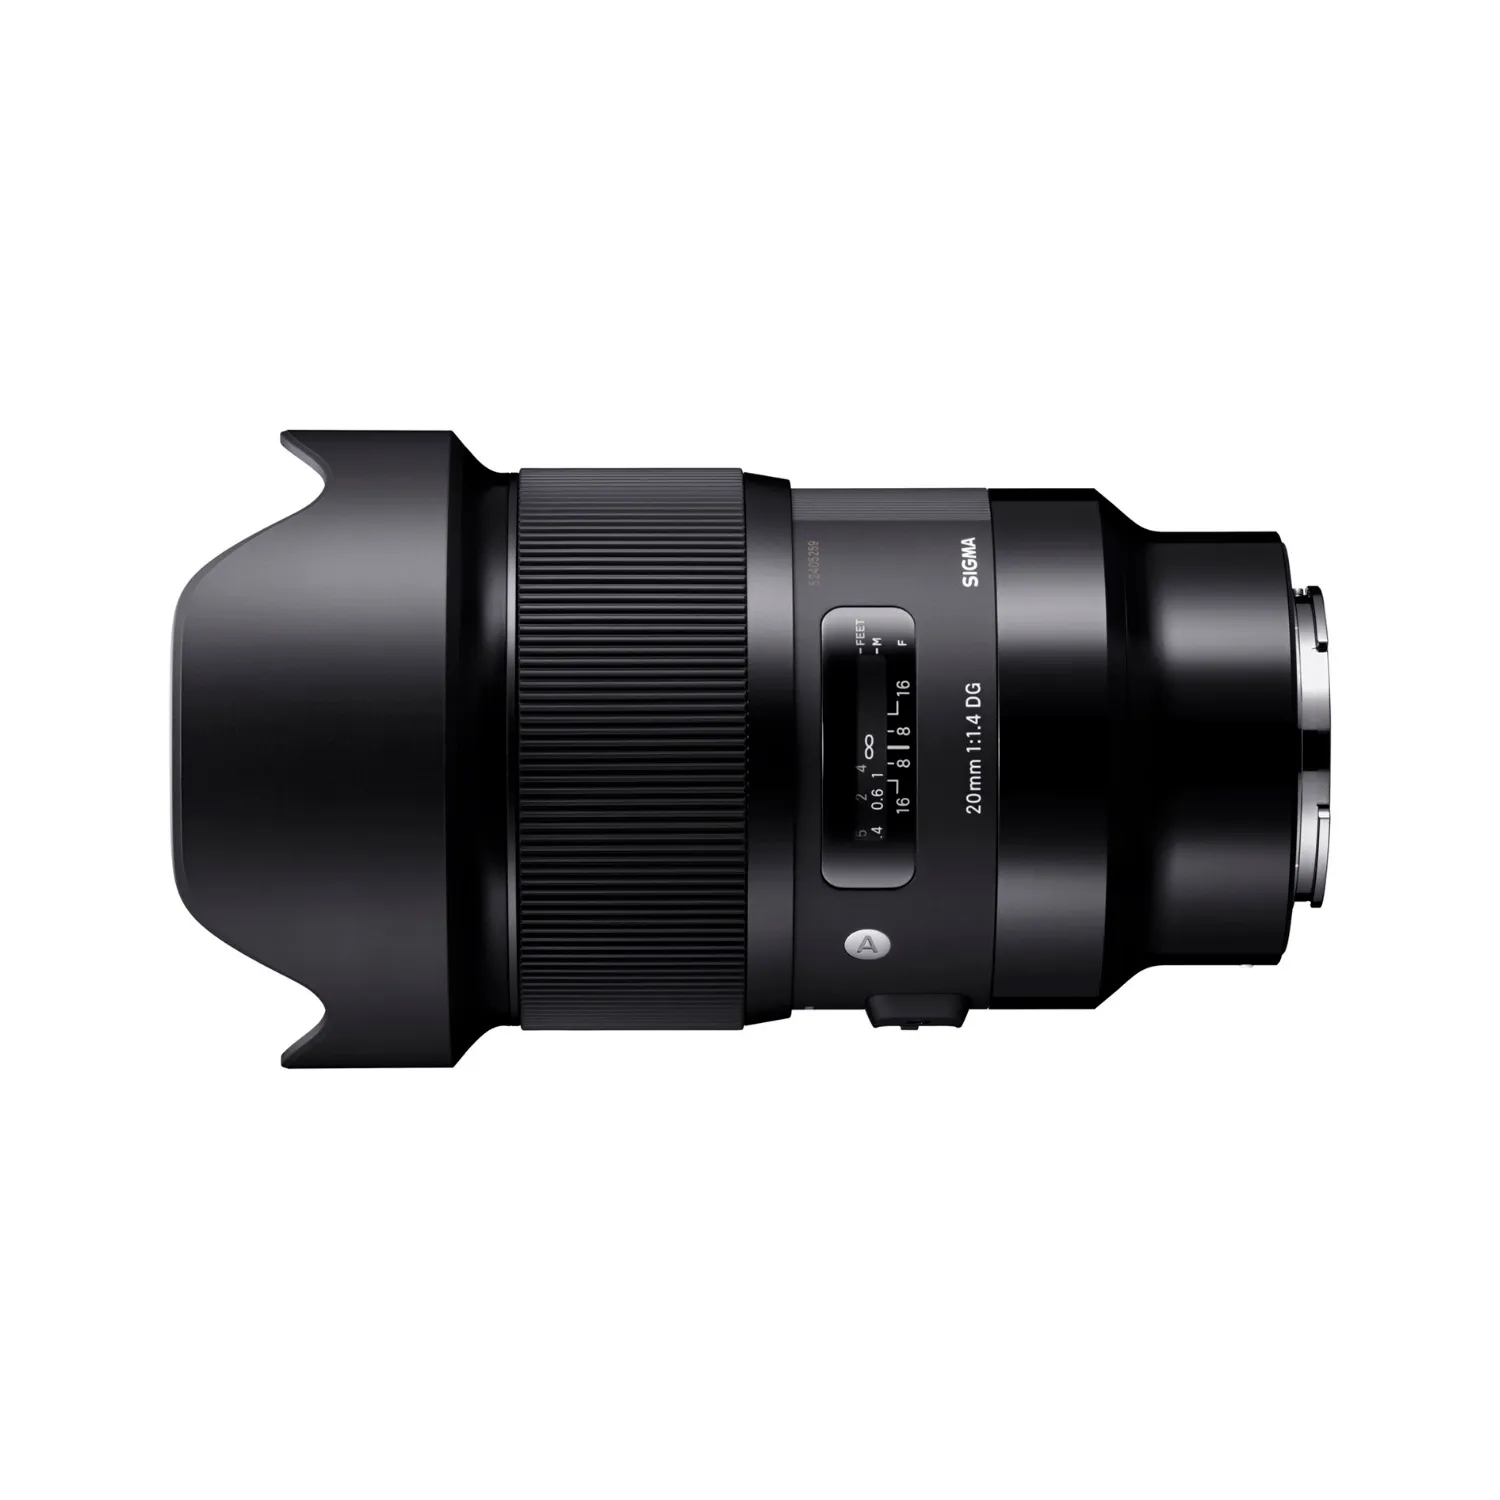 Sigma 20mm f/1.4 DG HSM Art Lens for Sony E-Mount